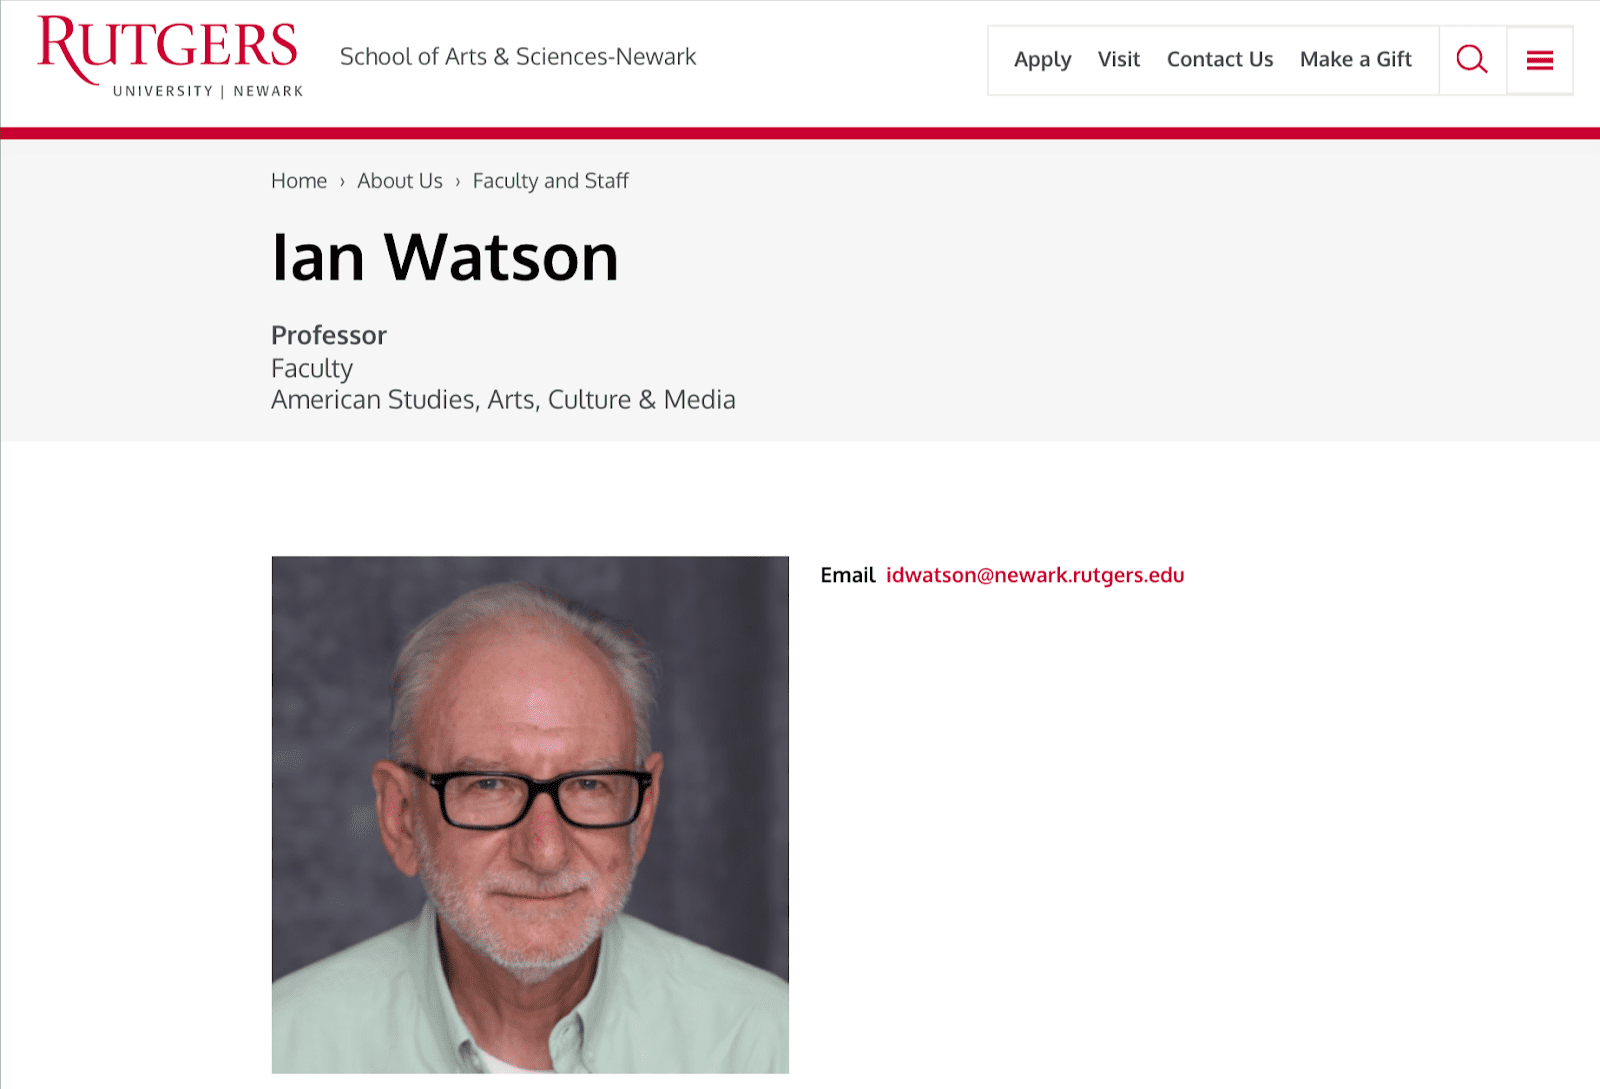 Zrzut ze strony Uniwersytetu Rutgersa. Profil Iana Watsona, profesora sztuki z Wydziału Studiów Amerykanistycznych, Sztuki, Kultury i Mediów - widać na nim m.in. zdjęcie mężczyzny.